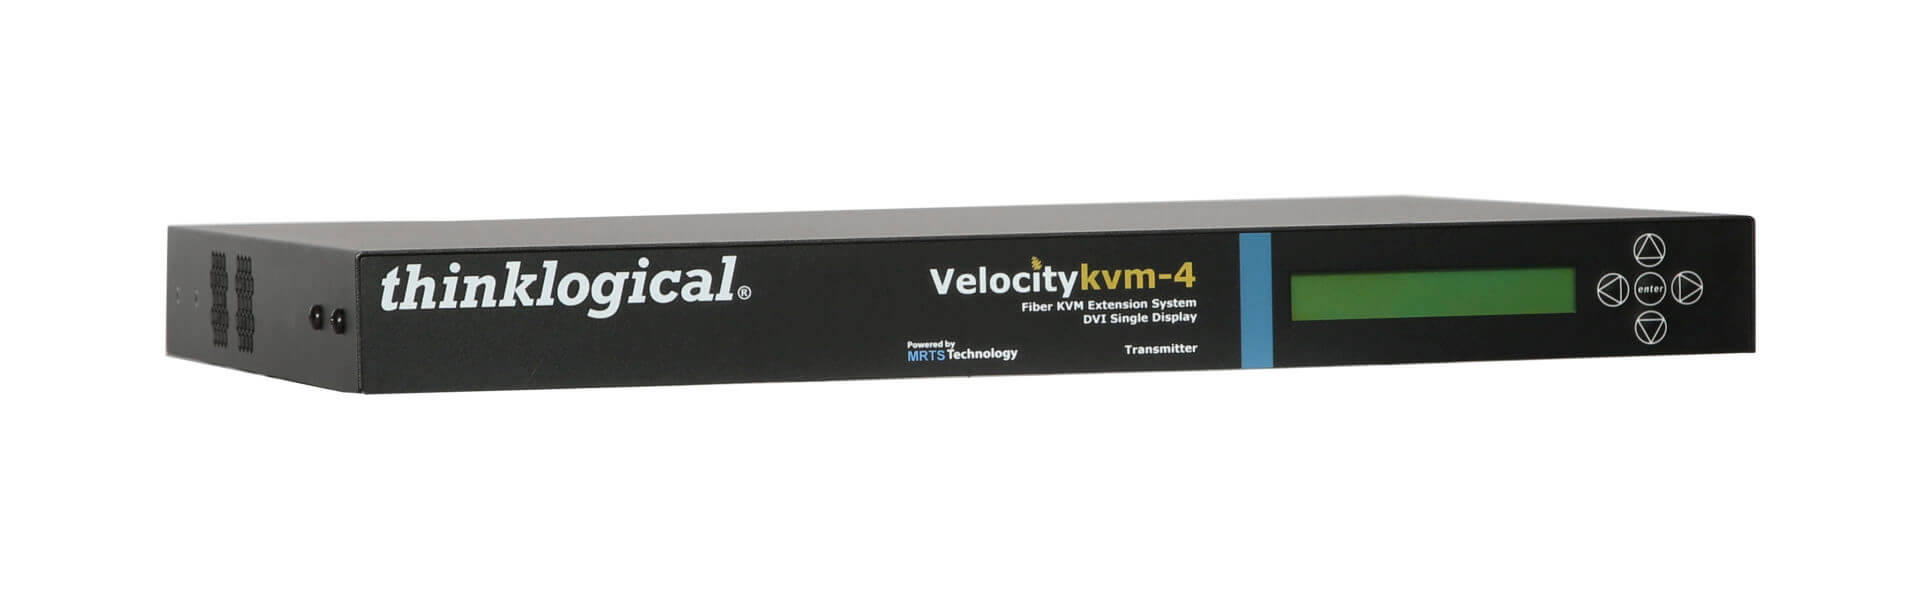 Velocity 4 KVM Extender